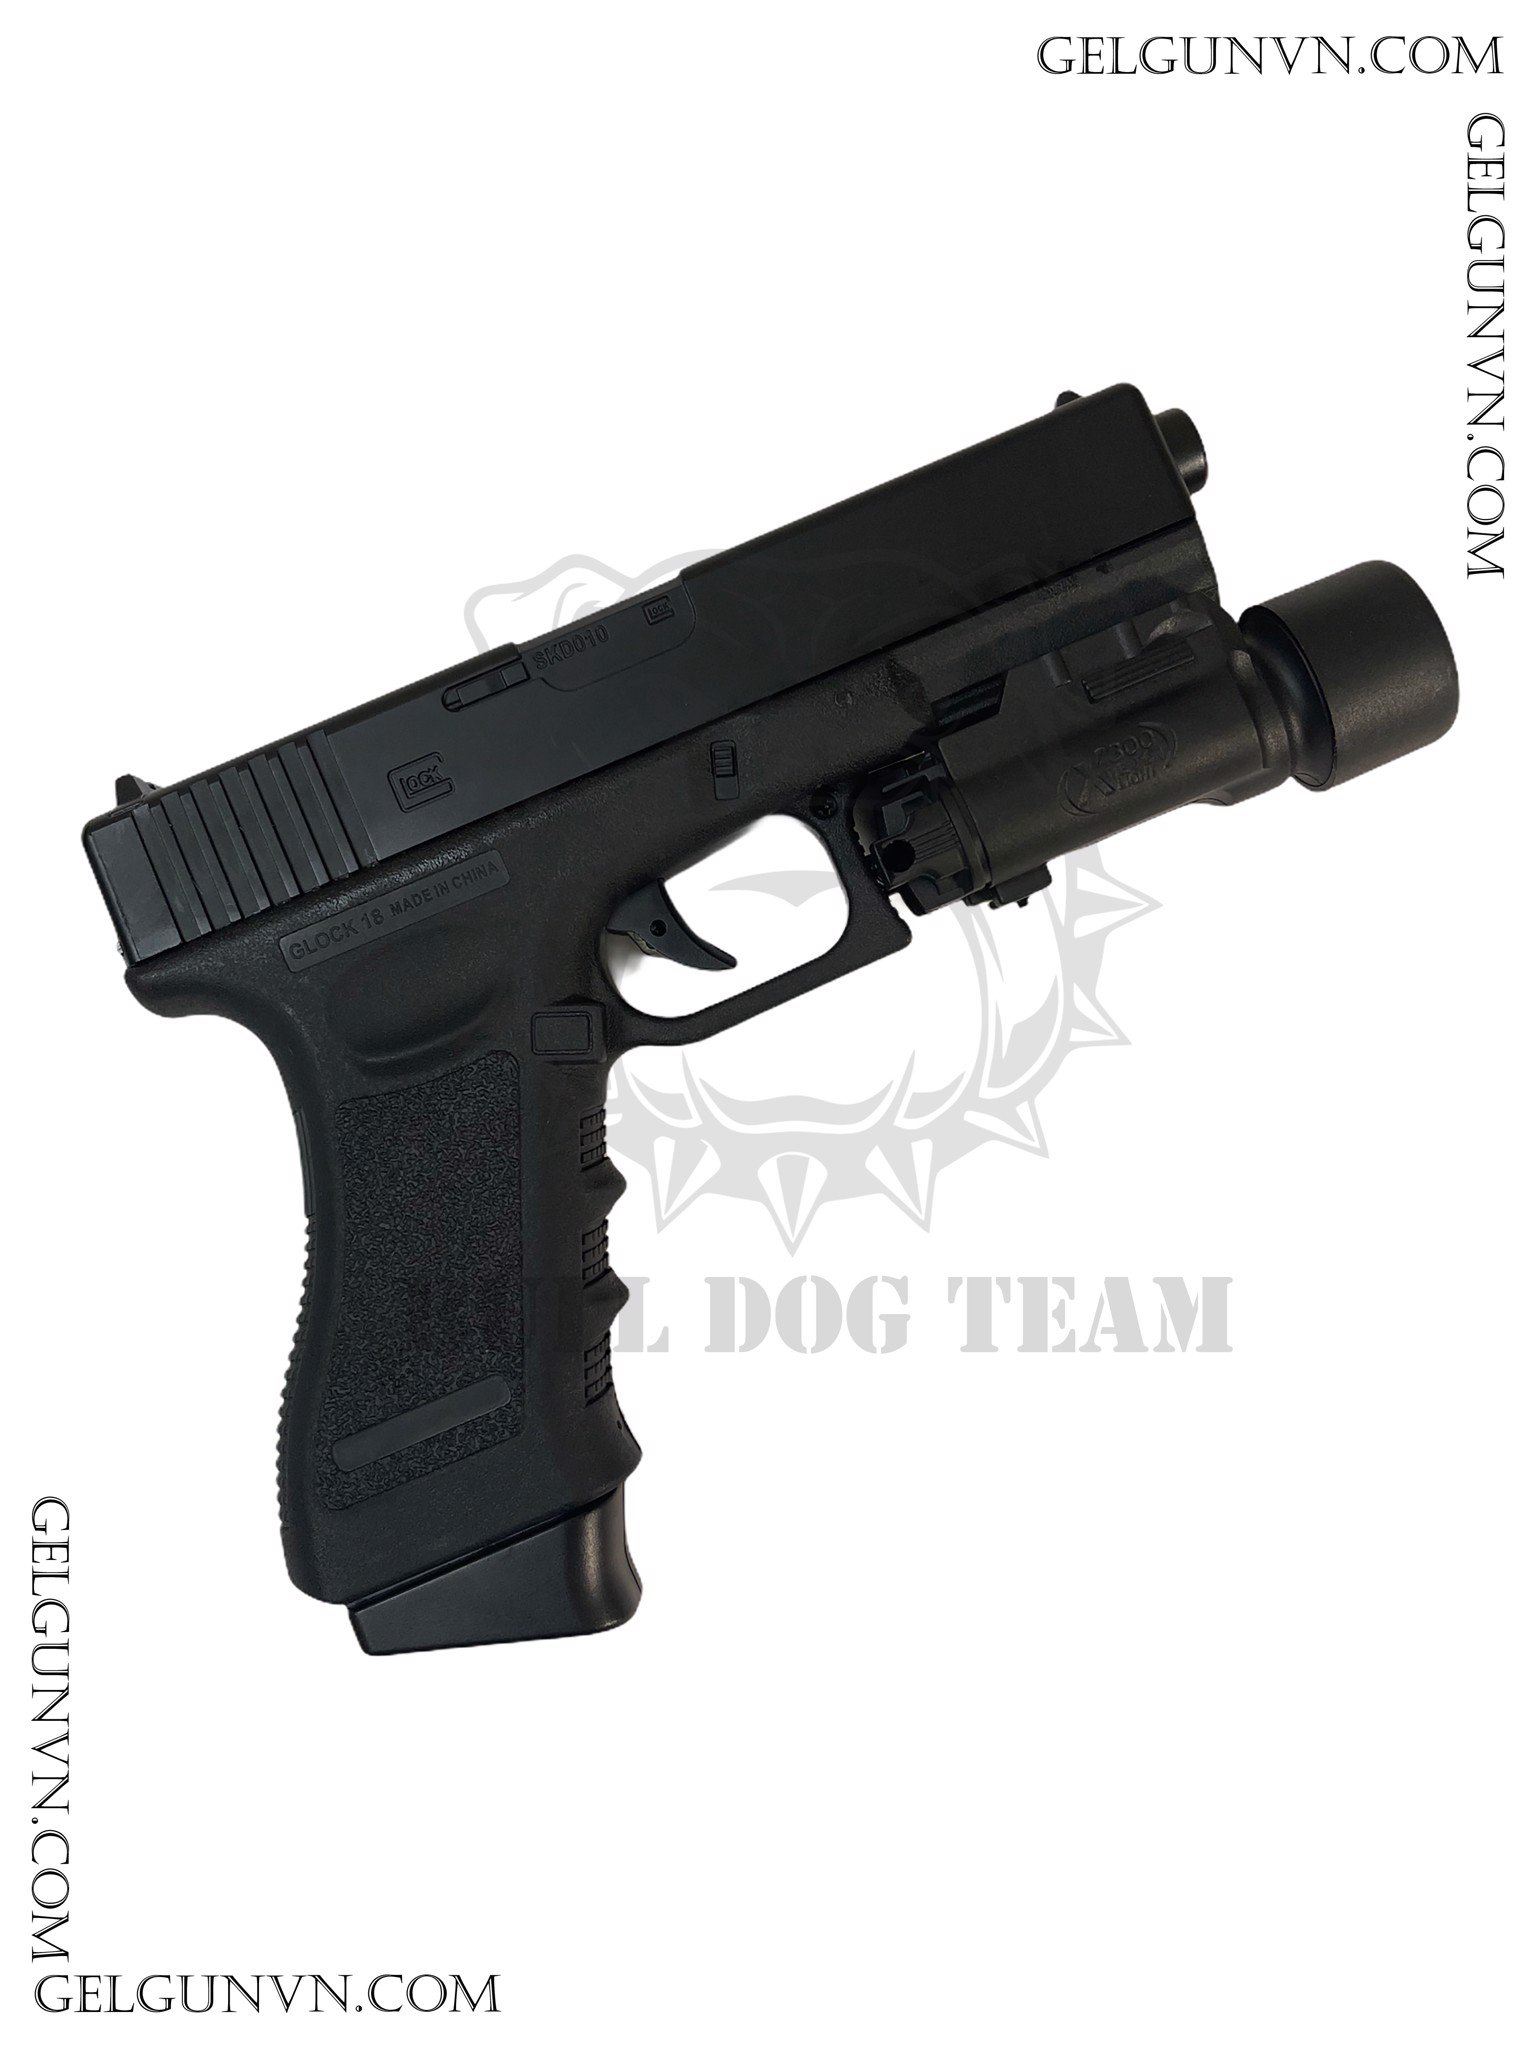  Súng Đạn Thạch Glock 18S - Cải Tiến, Đẹp Hơn , Khỏe hơn 